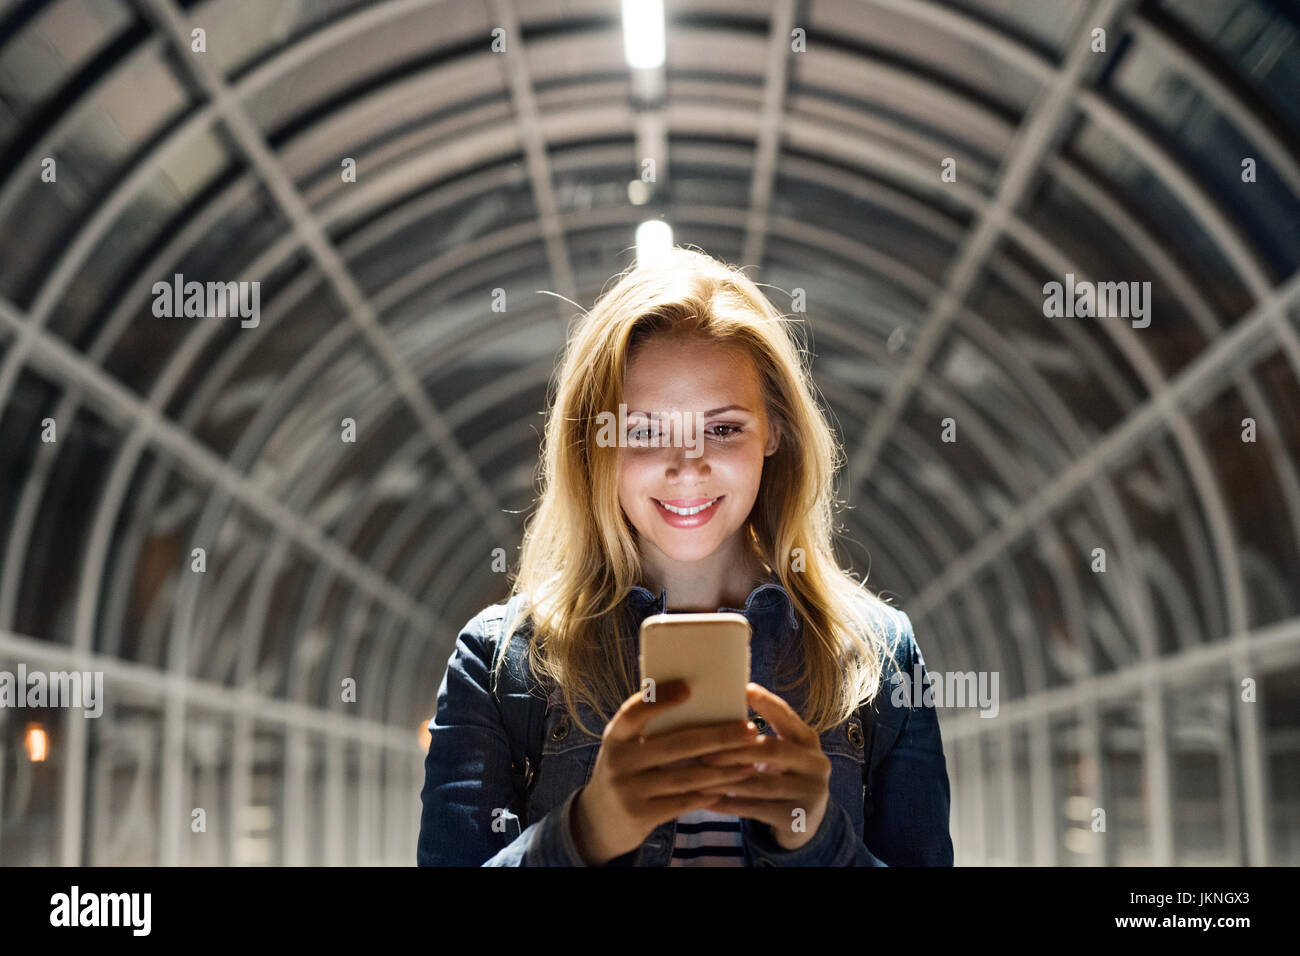 Femme dans la ville la nuit holding smartphone, sms. Banque D'Images